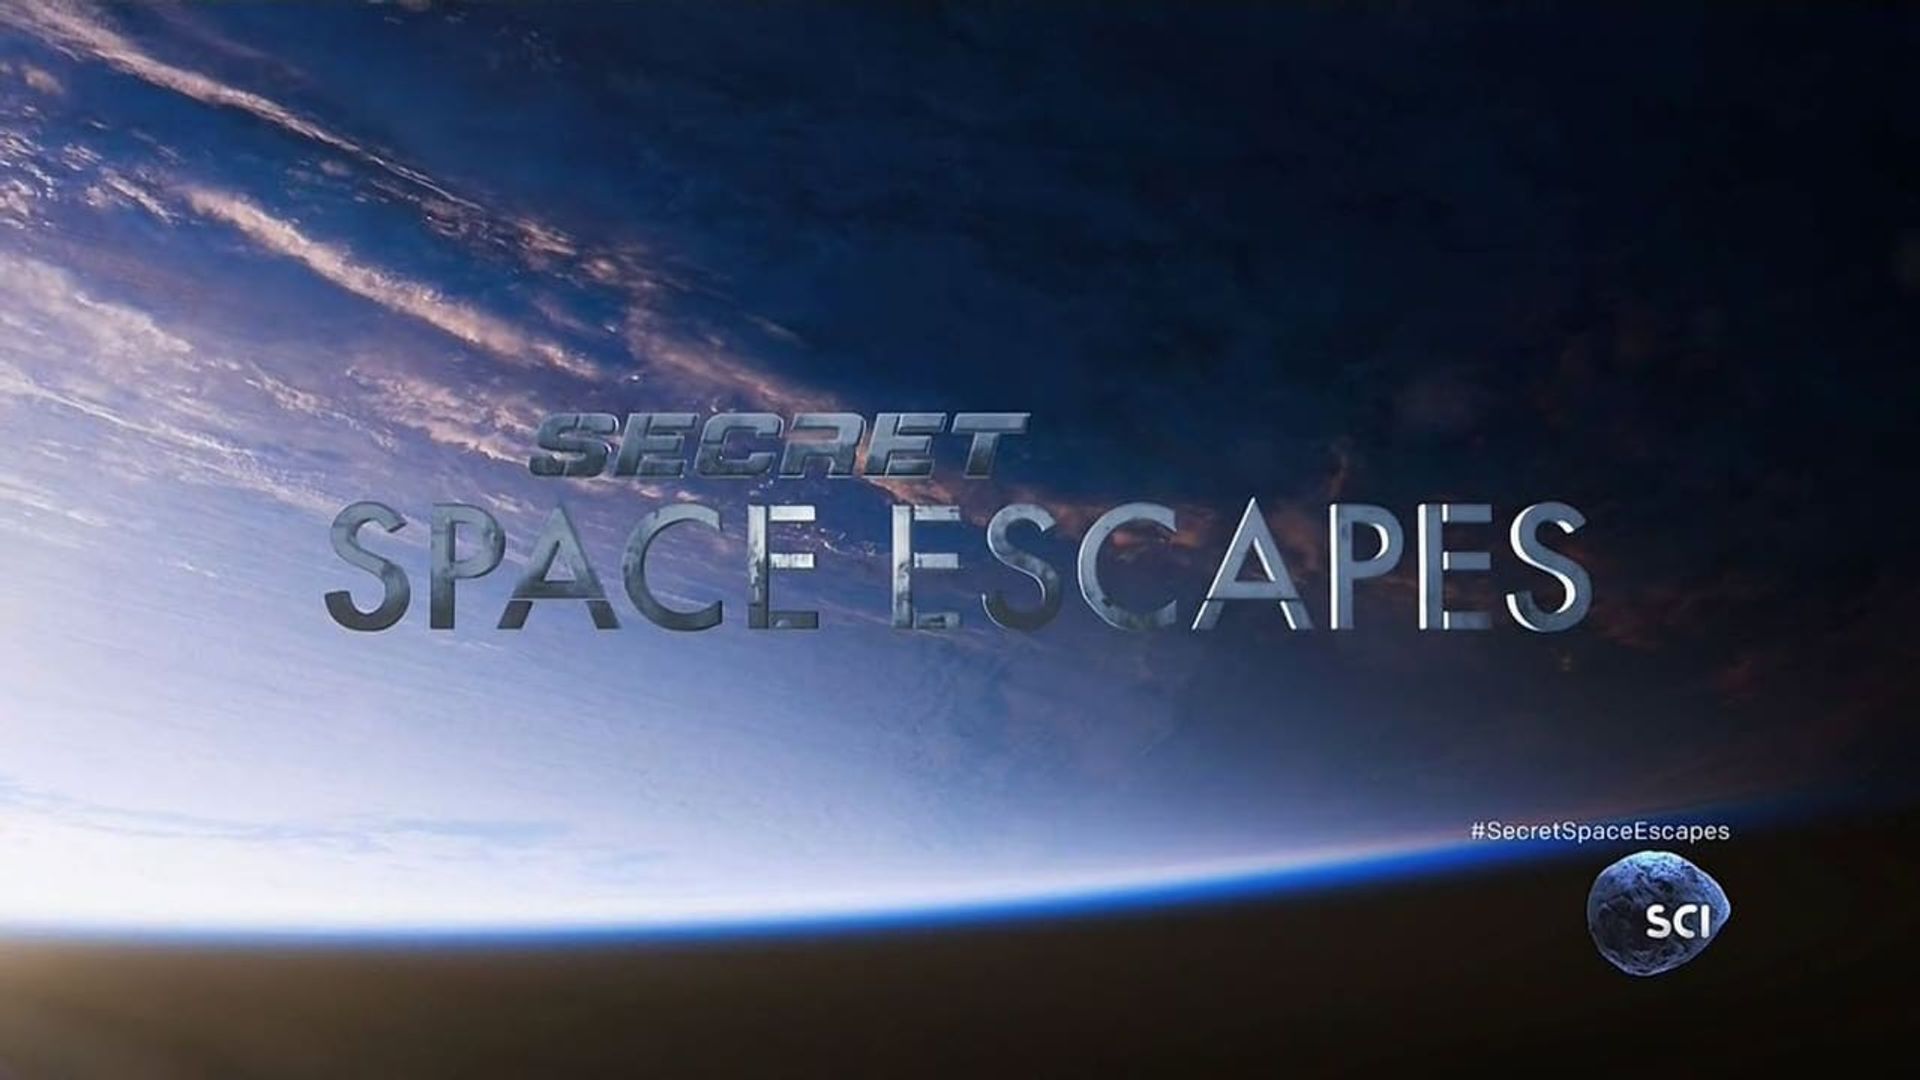 Secret Space Escapes background